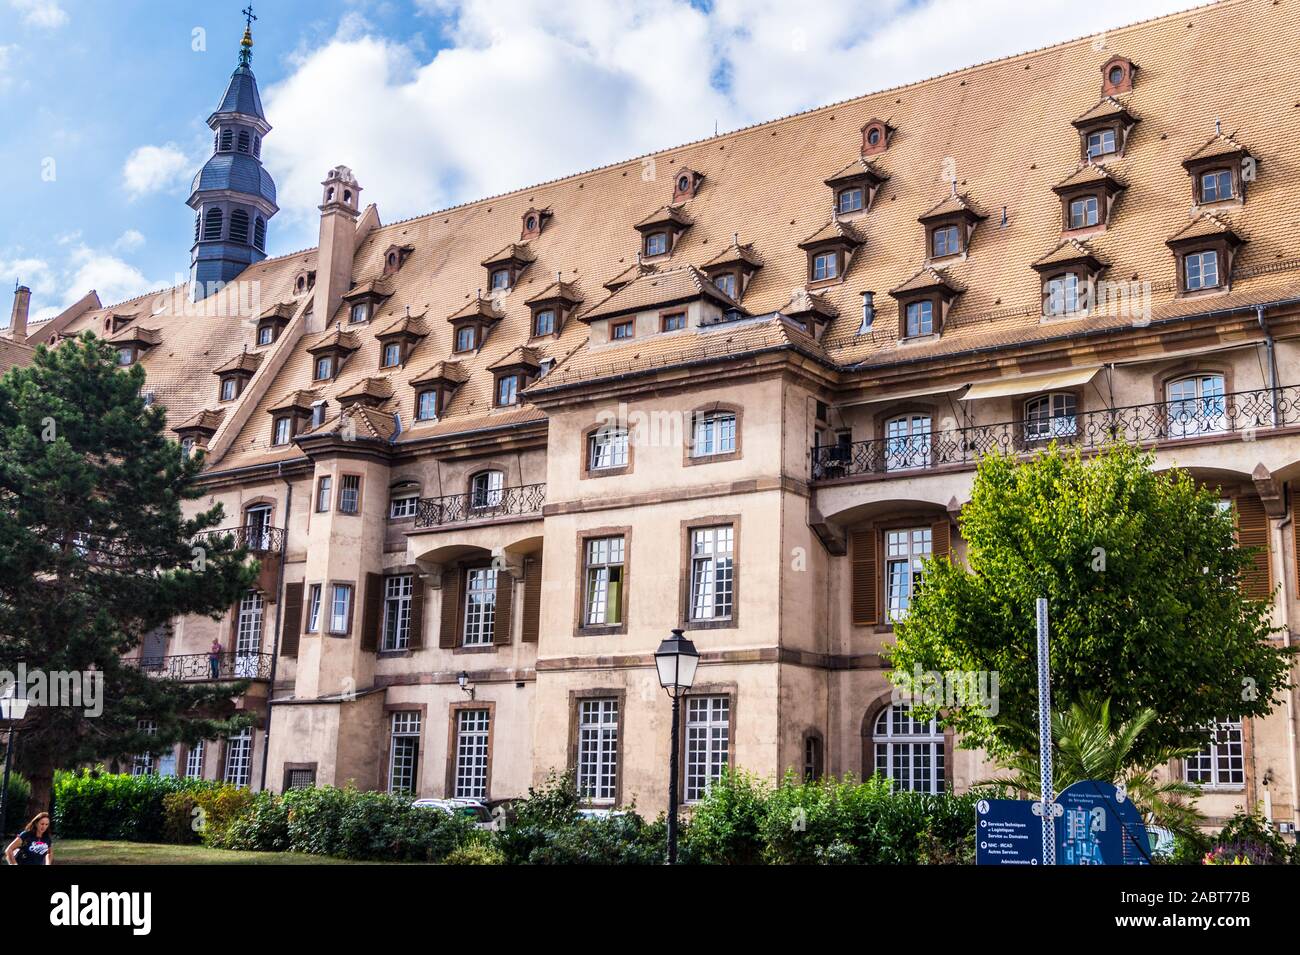 Hôpital Civil, hôpitaux universitaires, 1340- 1725, Strasbourg, Alsace, Grand Est, France Banque D'Images